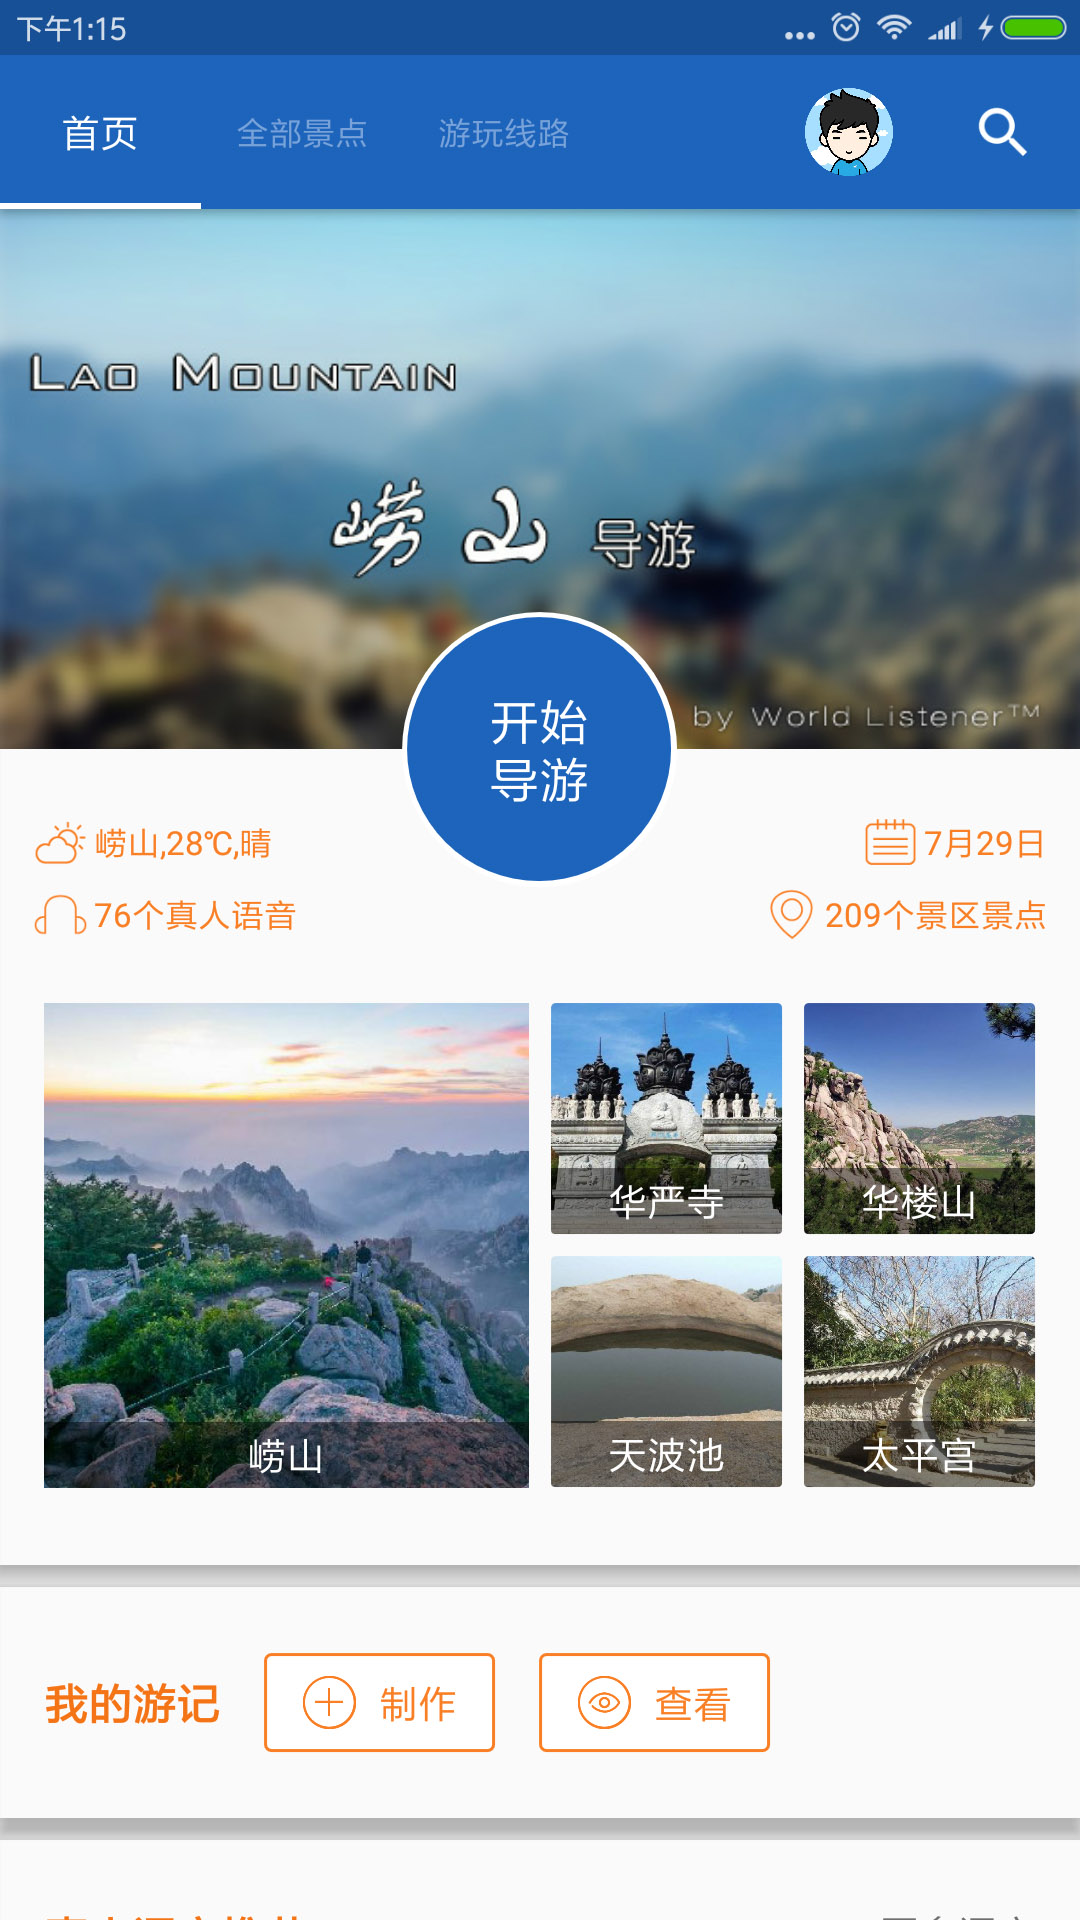 崂山旅行语音导游appv6.3.6